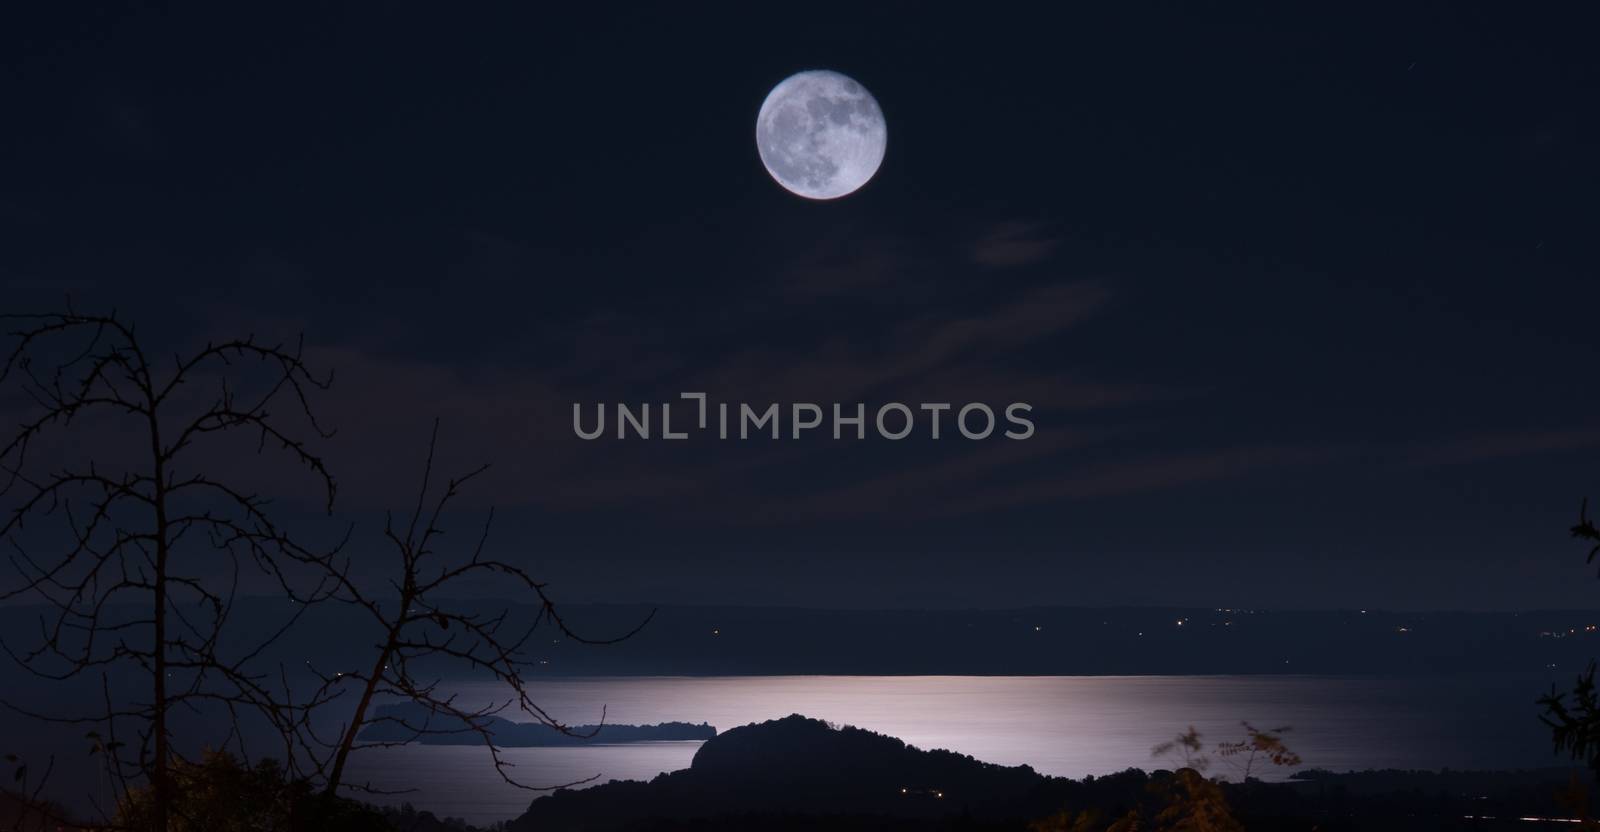 Dark night of full moon by easyclickshop